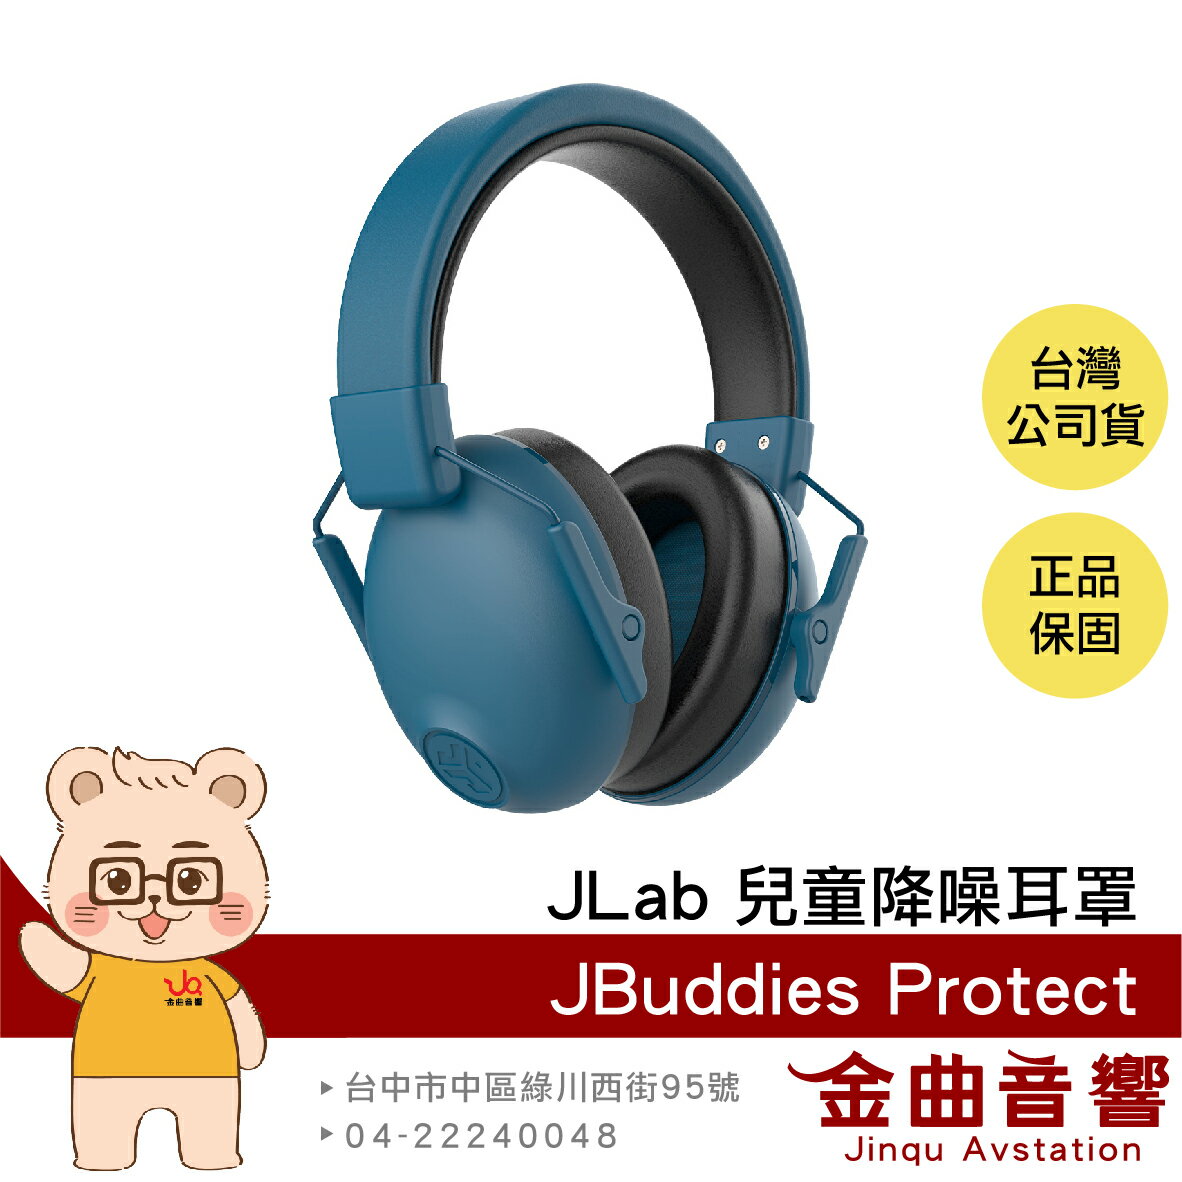 JLAB JBuddies Protect 海軍藍 降噪23dB 兒童 青少年 皆適用 可折疊 降噪耳罩 無音樂功能 | 金曲音響